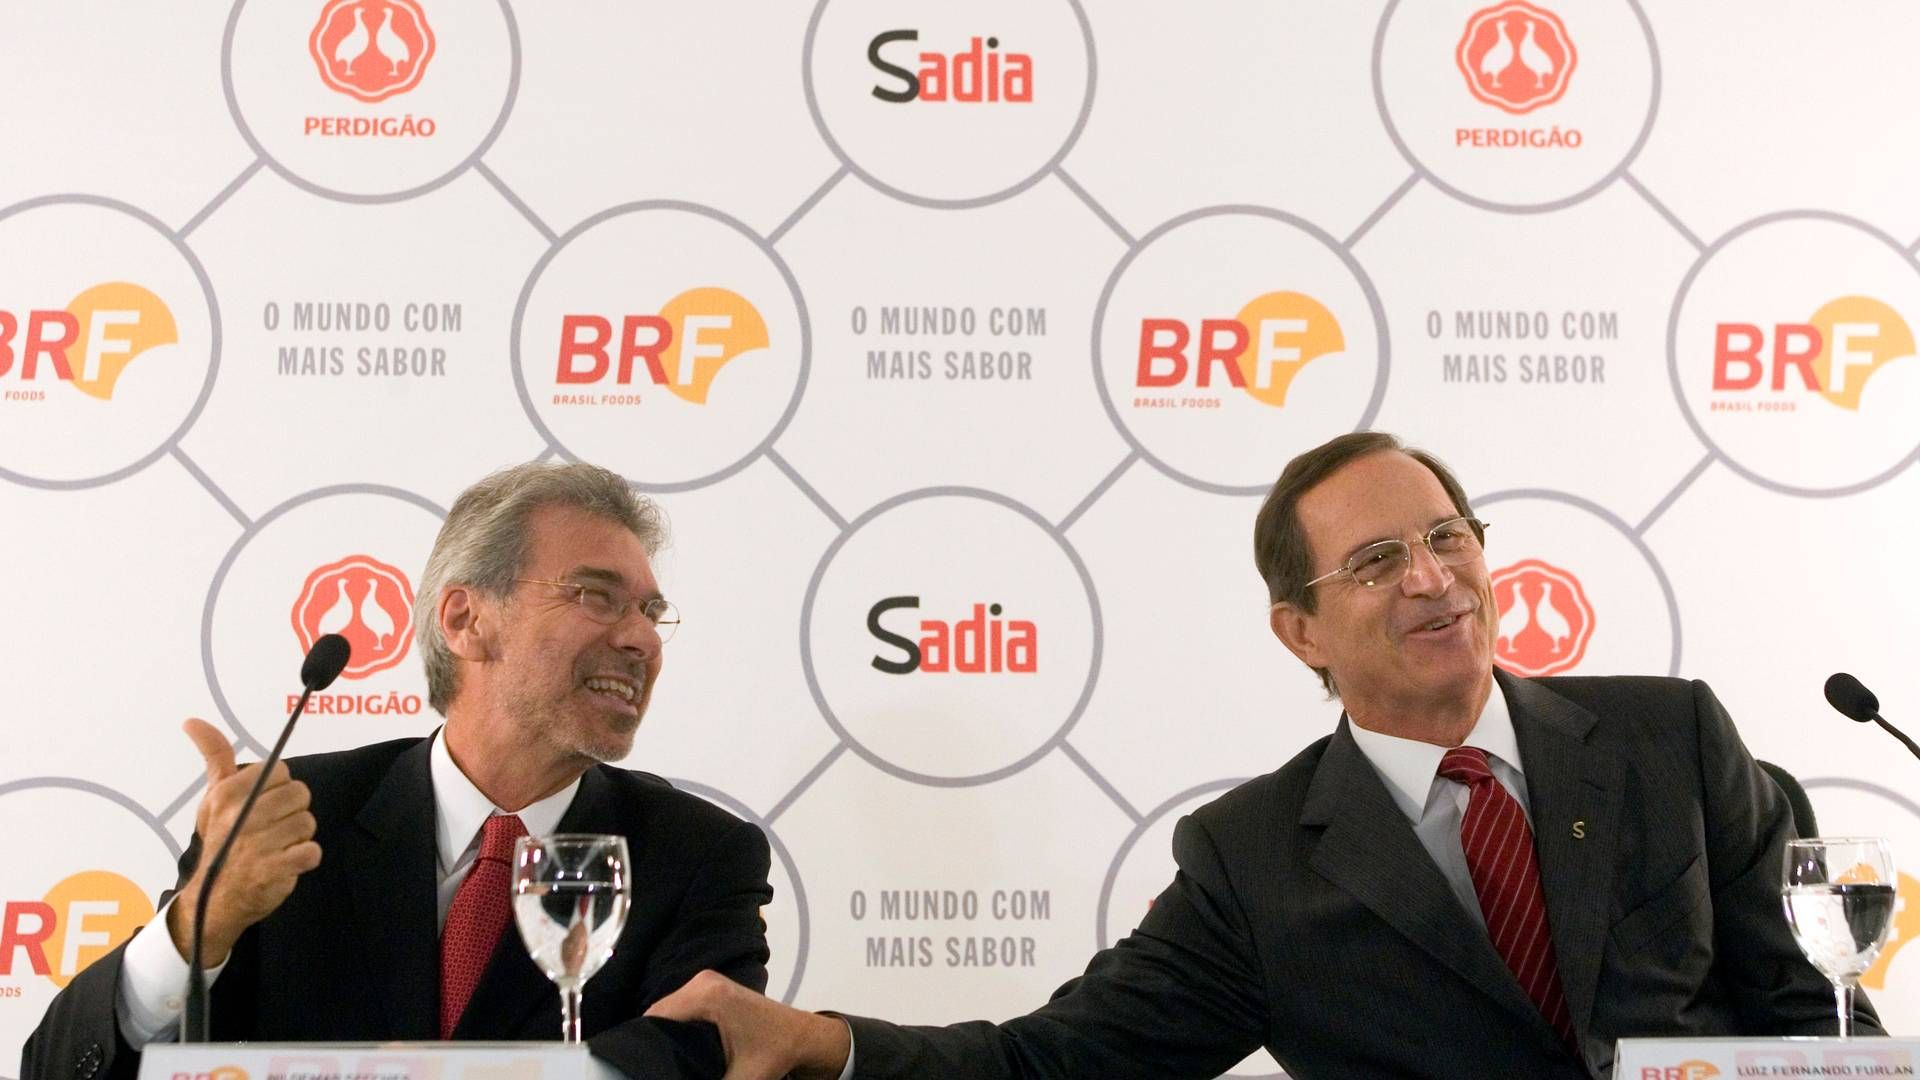 Brasil Foods er resultatet af fusionen mellem Sadia og Perdigão, to store fødevarevirksomheder i Brasilien, som blev annonceret i 2009 og gennemført i 2013. Arkivfoto. | Foto: Andre Penner/AP/Ritzau Scanpix